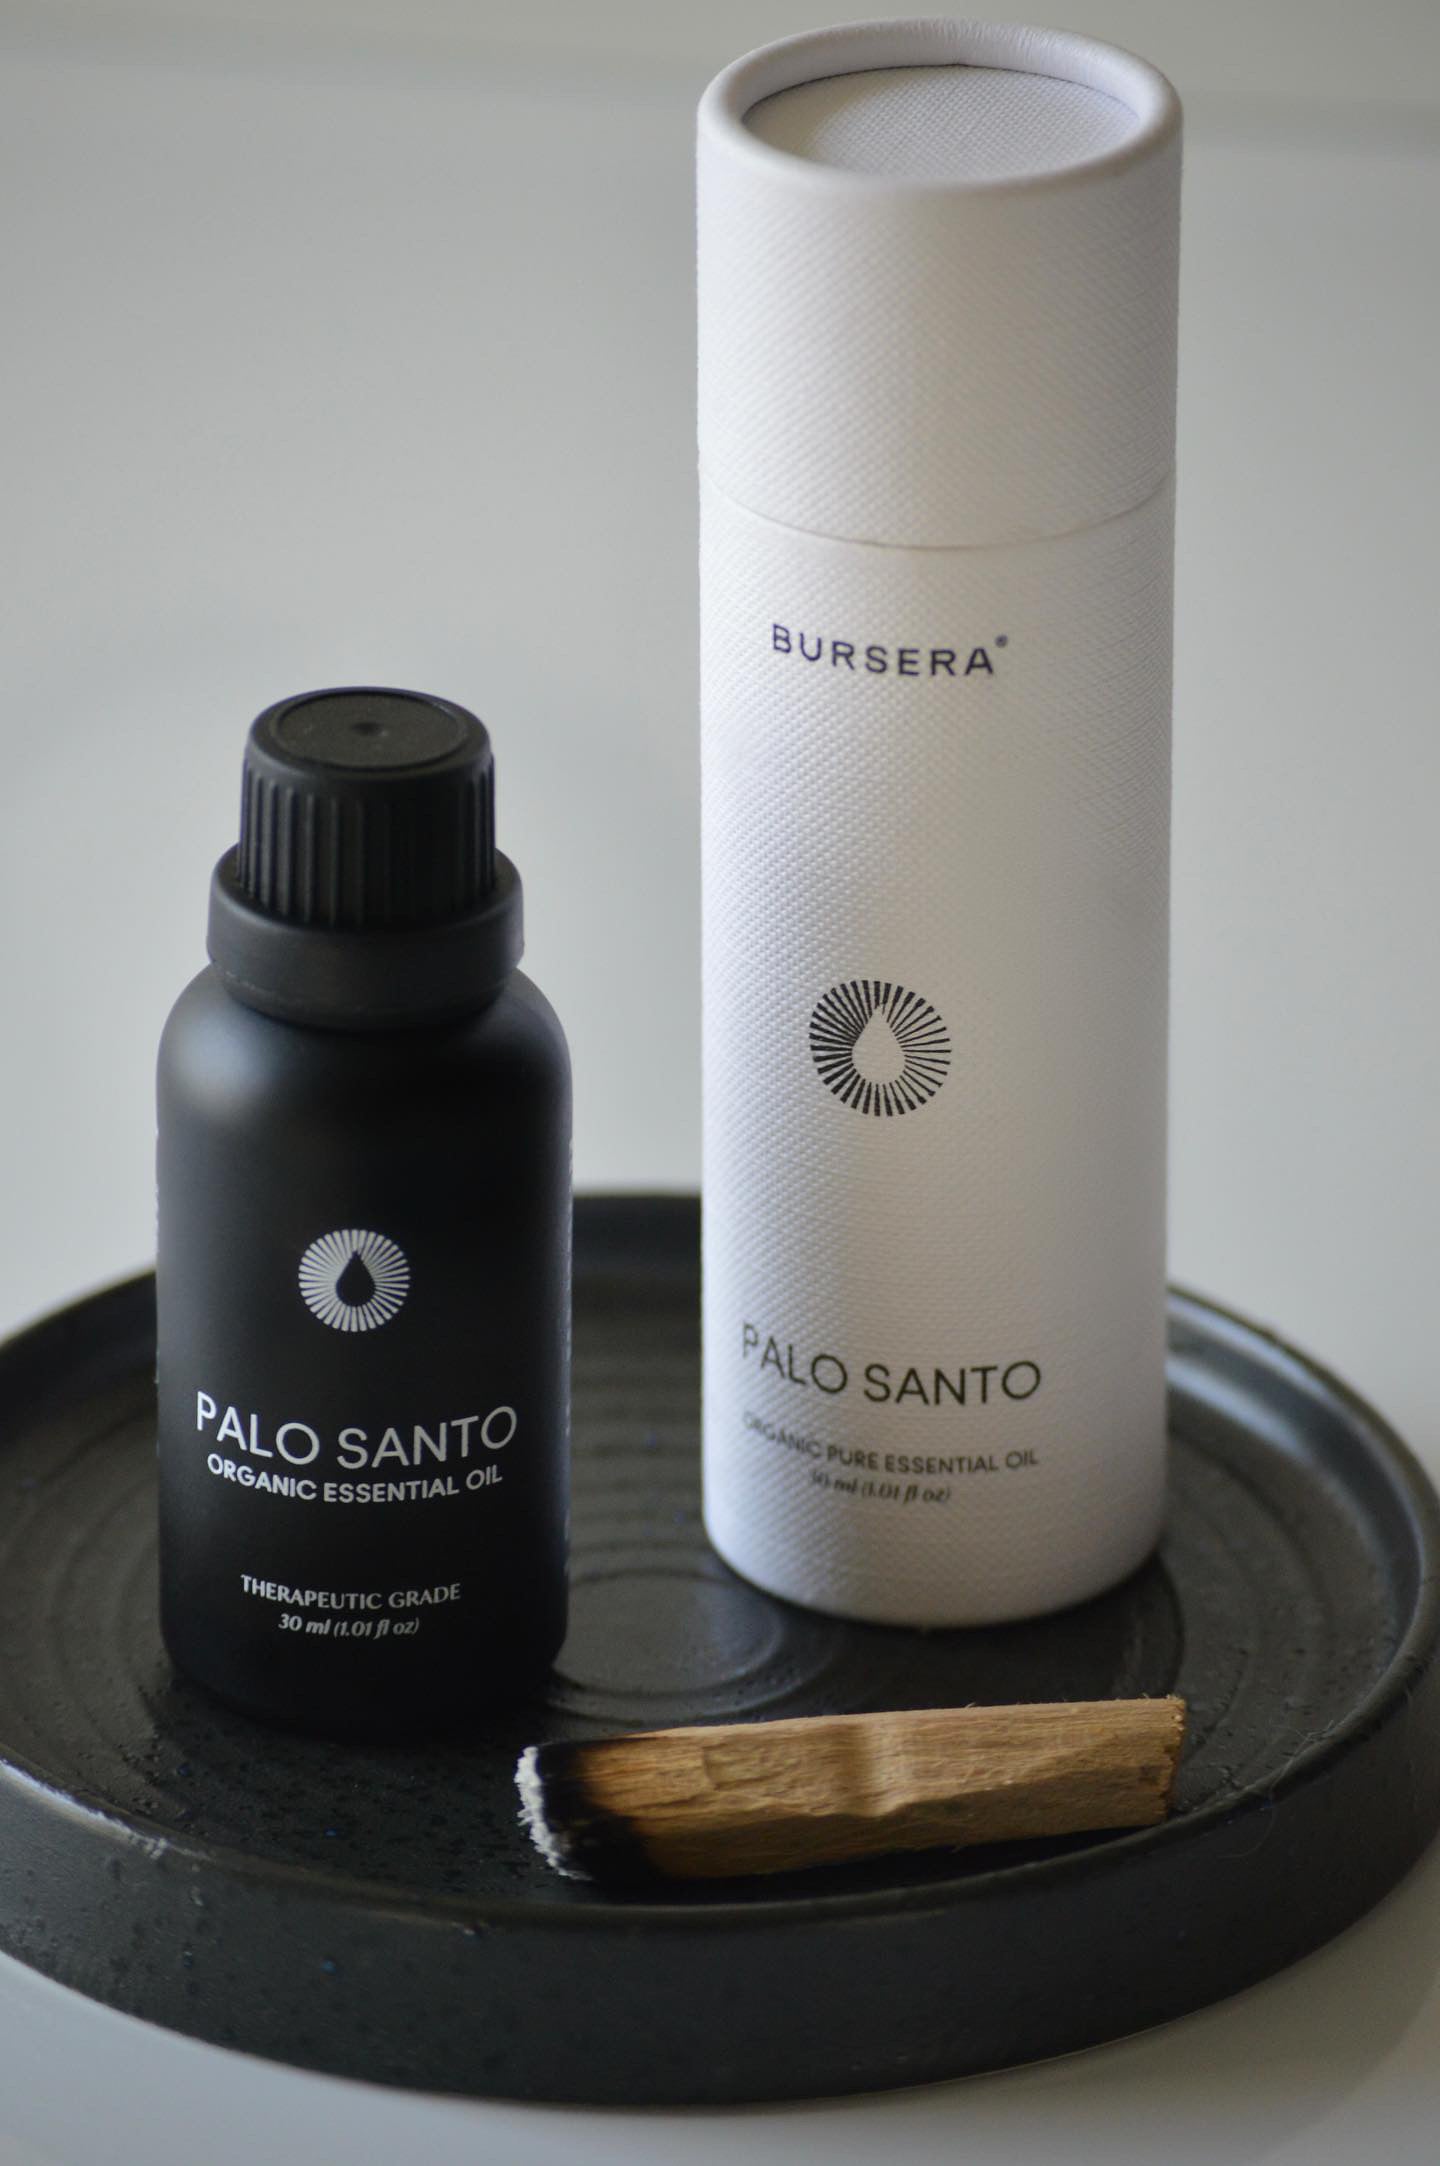 Palo Santo Essential Oil, 100% Pure, Natural Therapeutic Grade